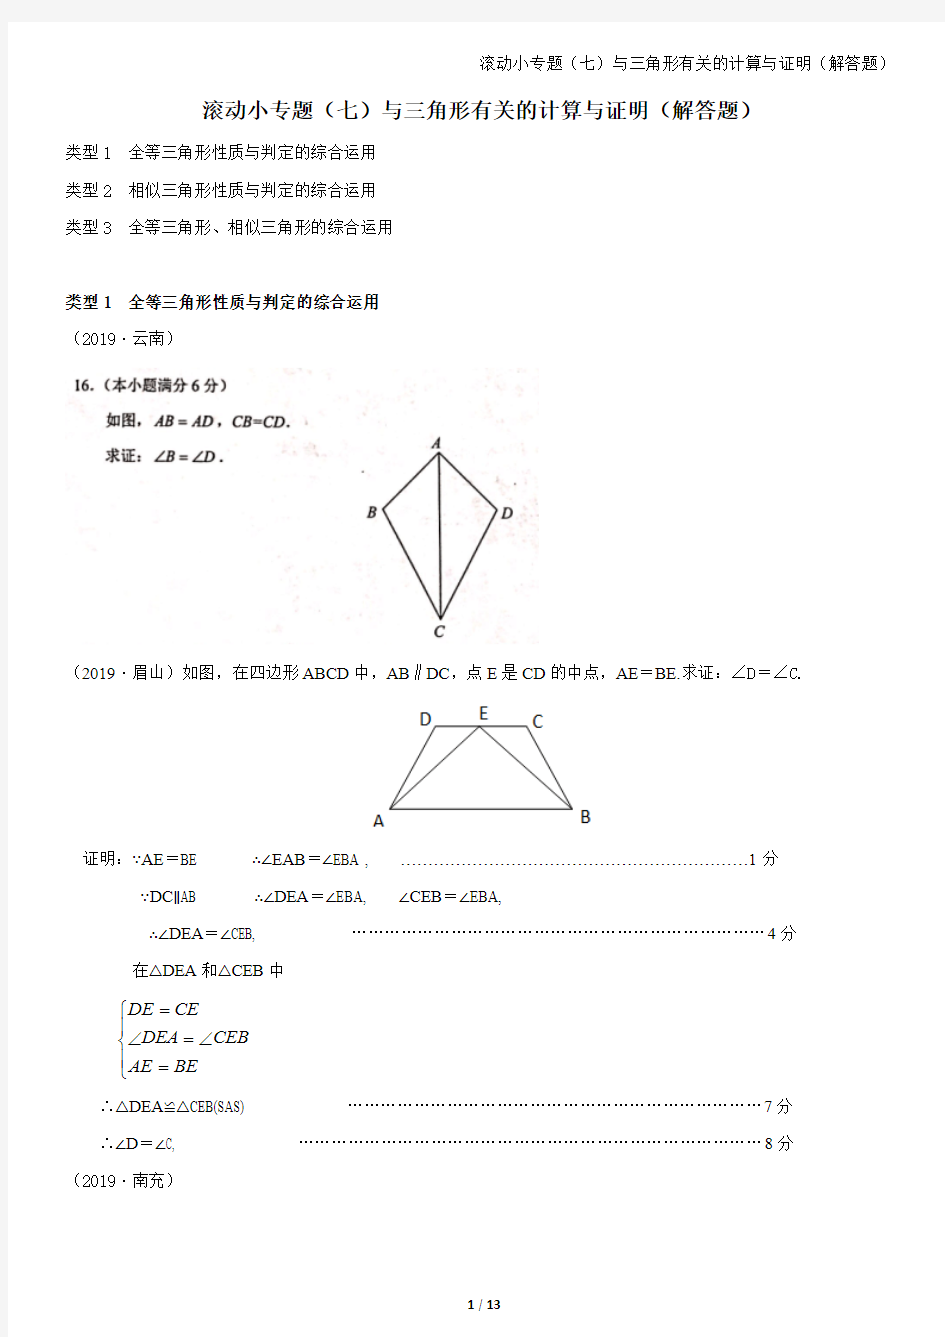 7.与三角形有关的计算与证明(解答题)